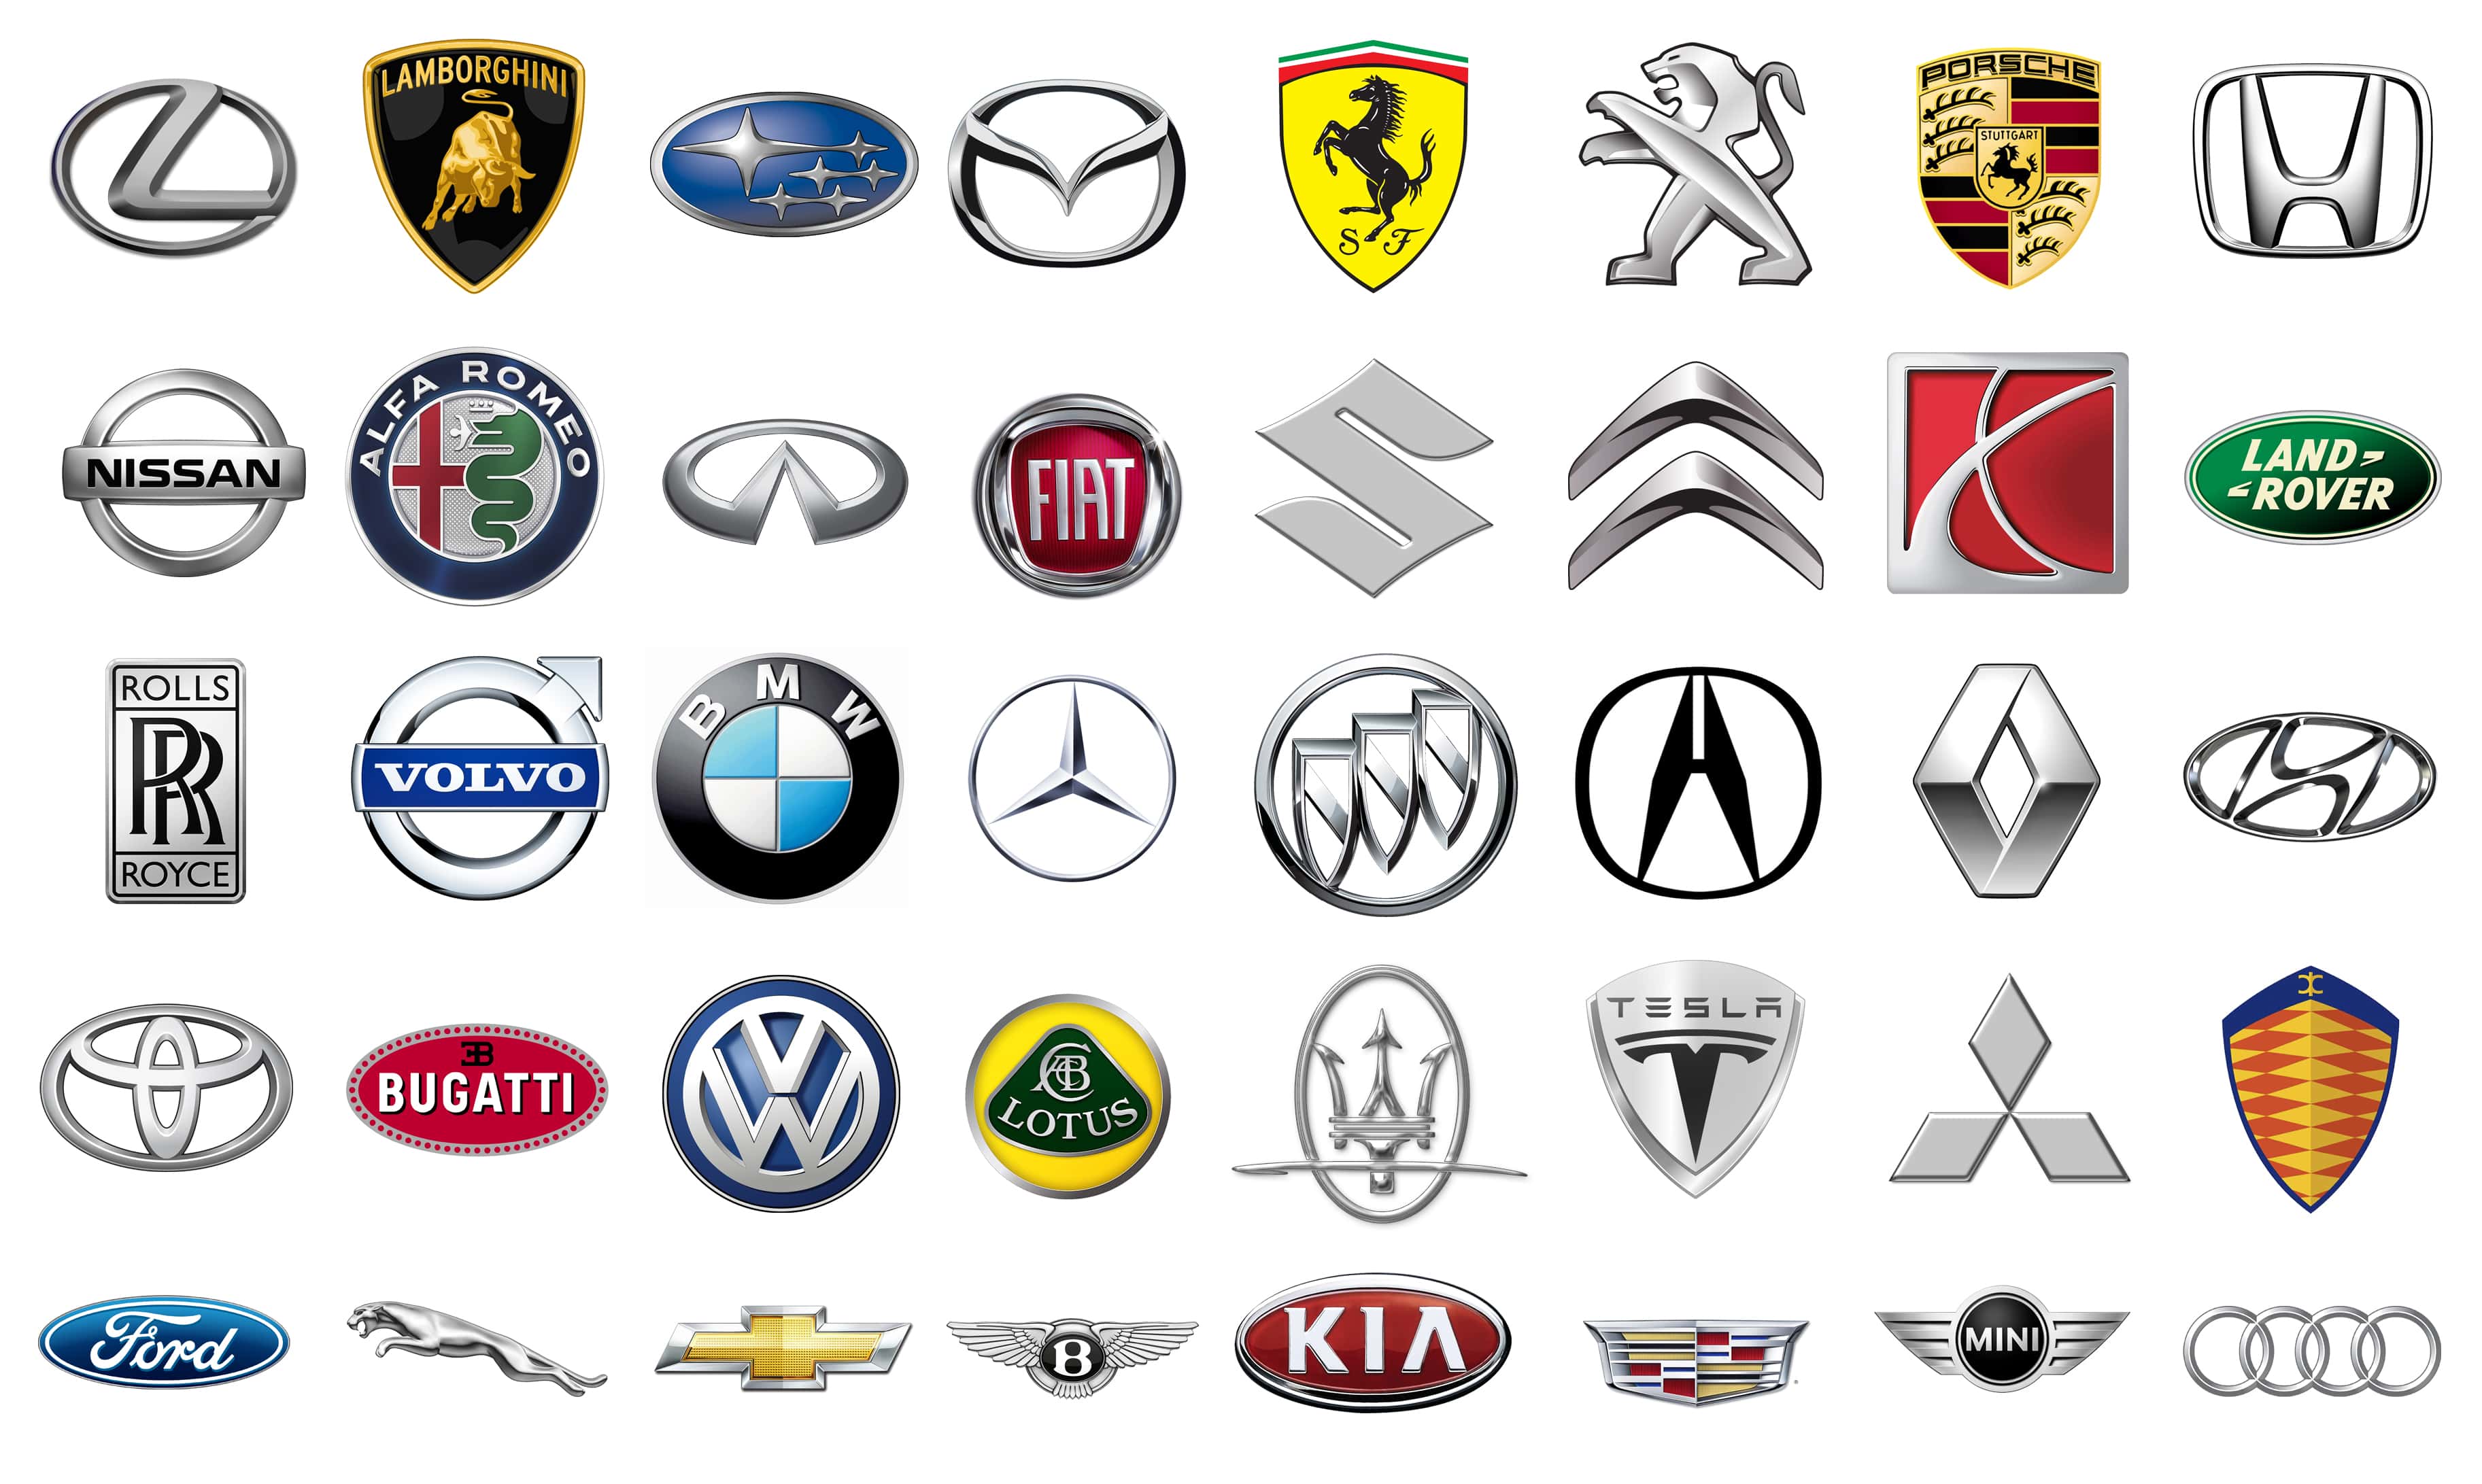 Все марки автомобилей со значками и названиями. Марки автомобилей. Автомобильные значки. Эмблемы машин. Логотипы автомобильных марок.